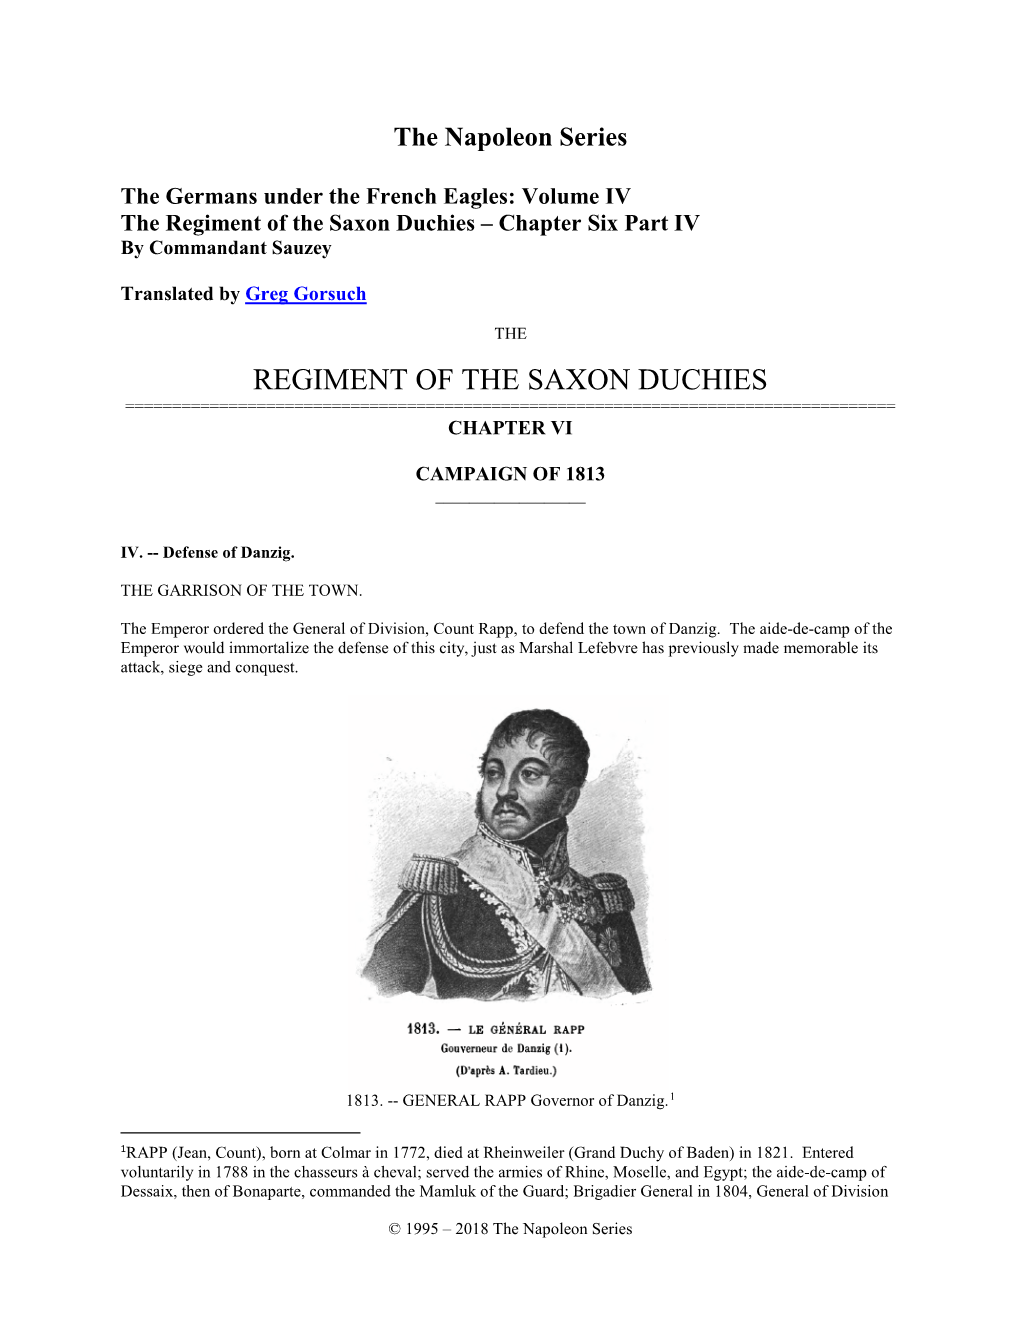 Regiment of the Saxon Duchies – Chapter Six Part IV by Commandant Sauzey